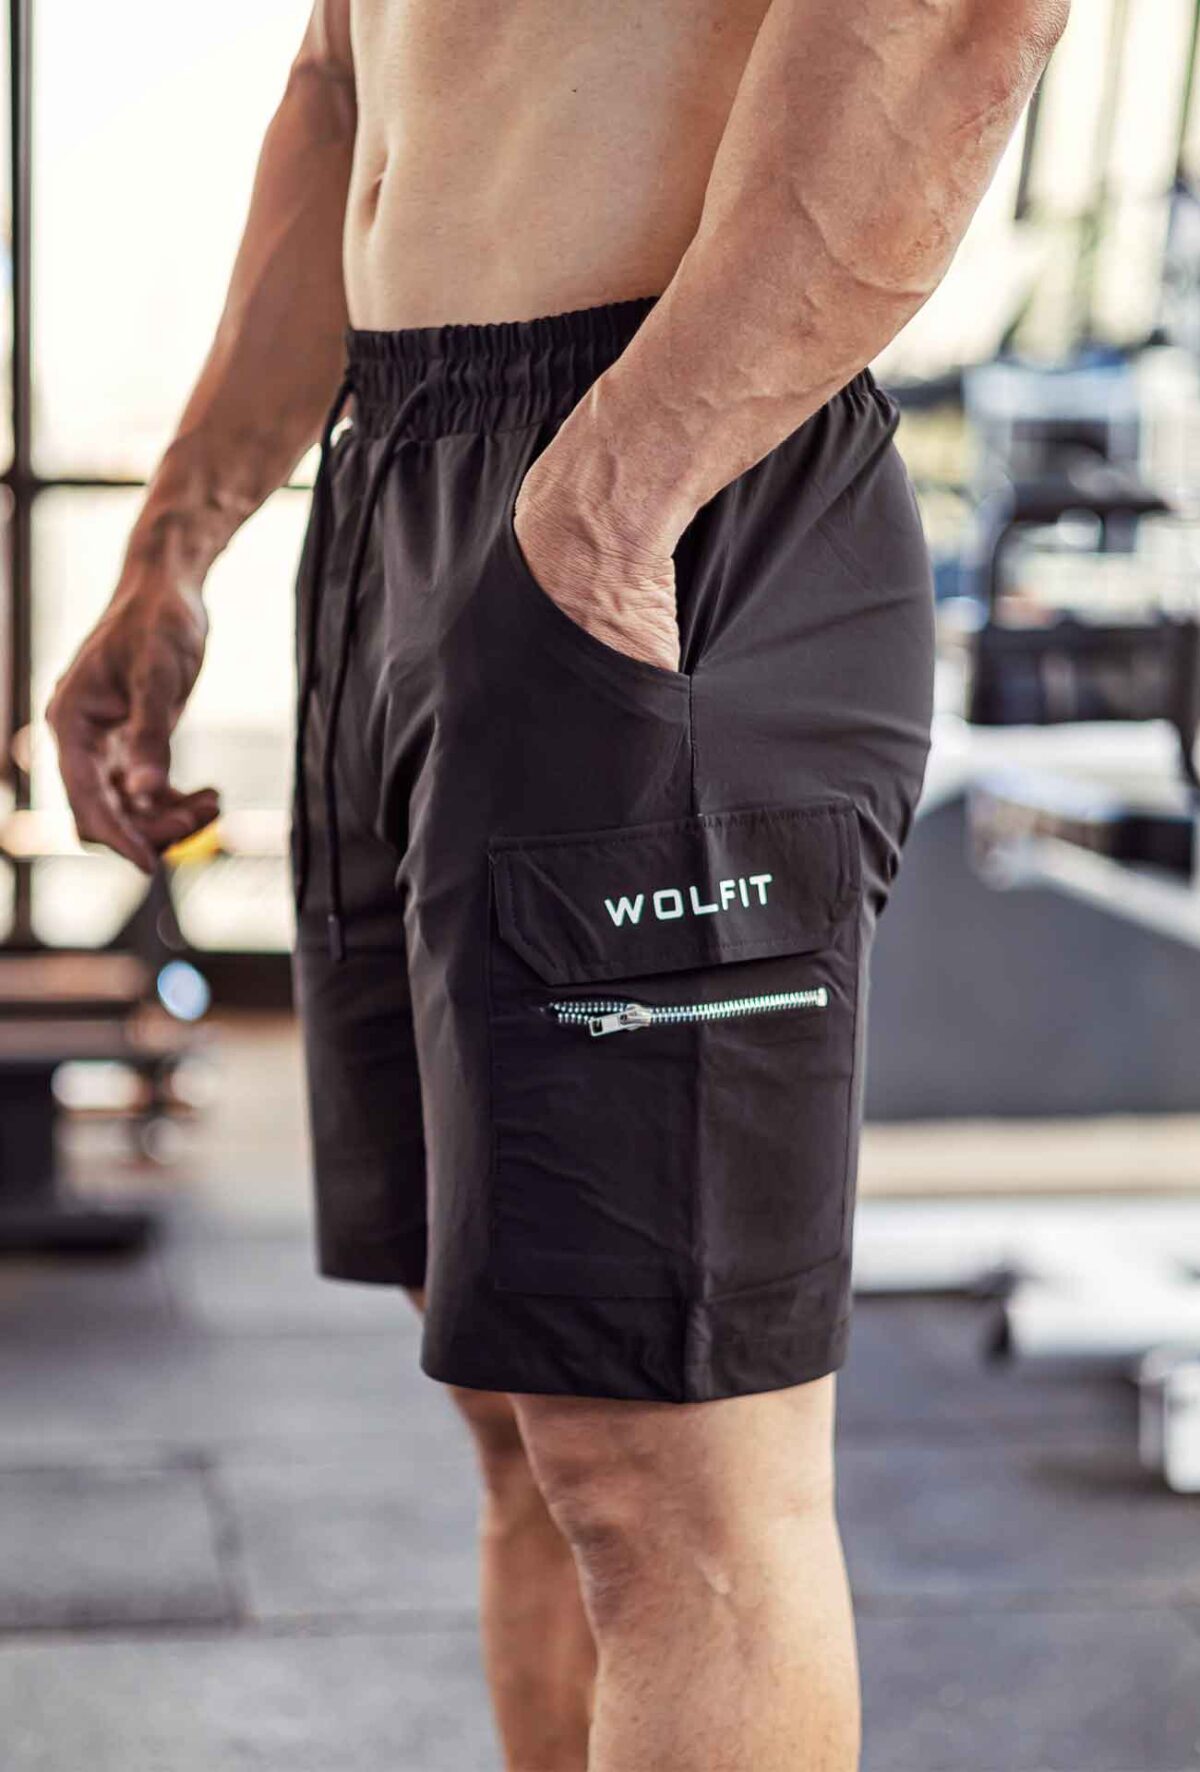 wolfit-elite-shorts-black-cargo